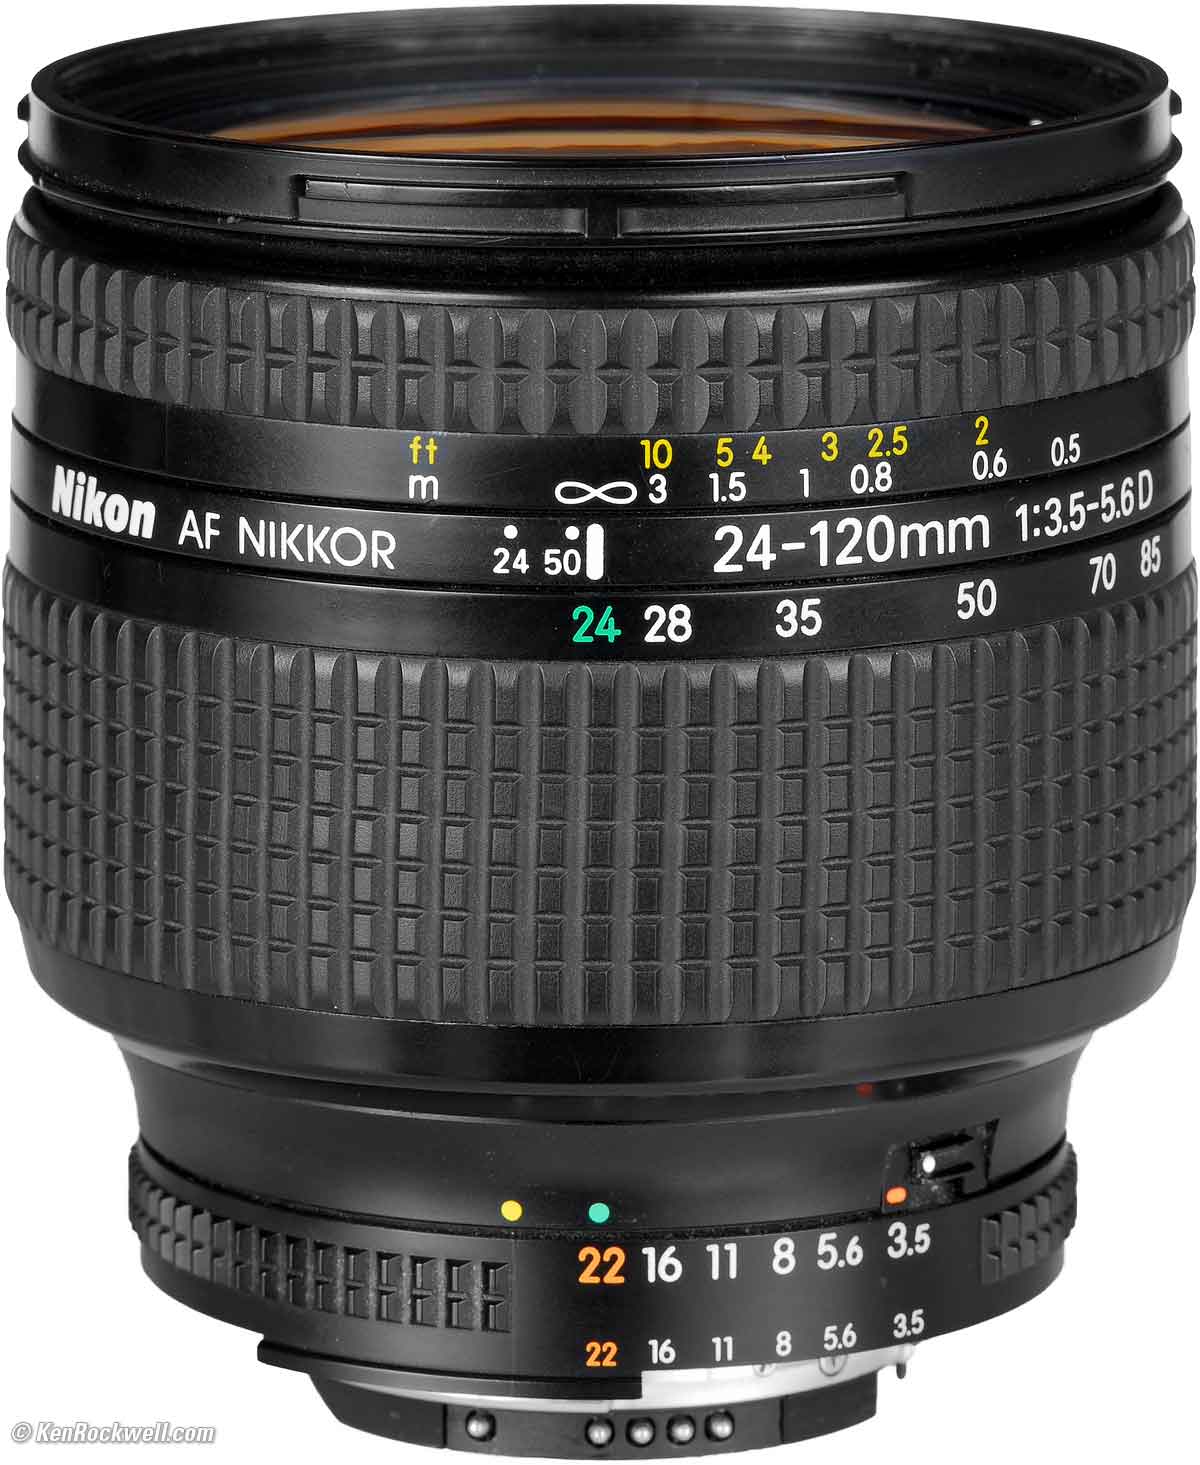 Nikon AF NIKKOR 24-120mm 1：3.5-5.6D-